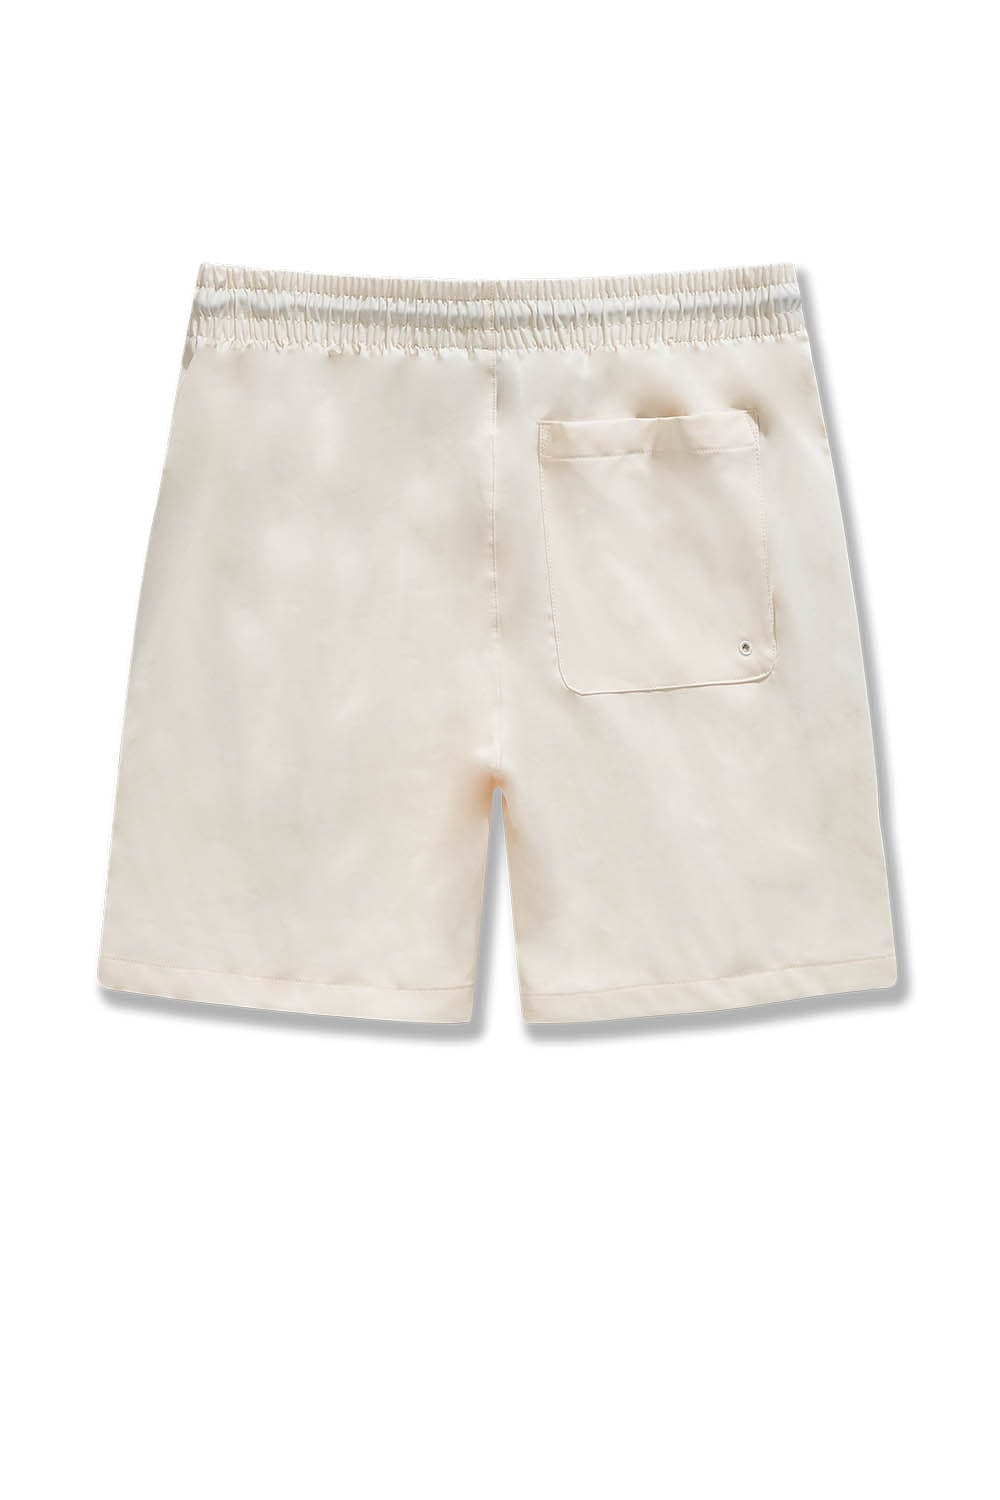 BB Retro - El Paso Shorts (Cream)